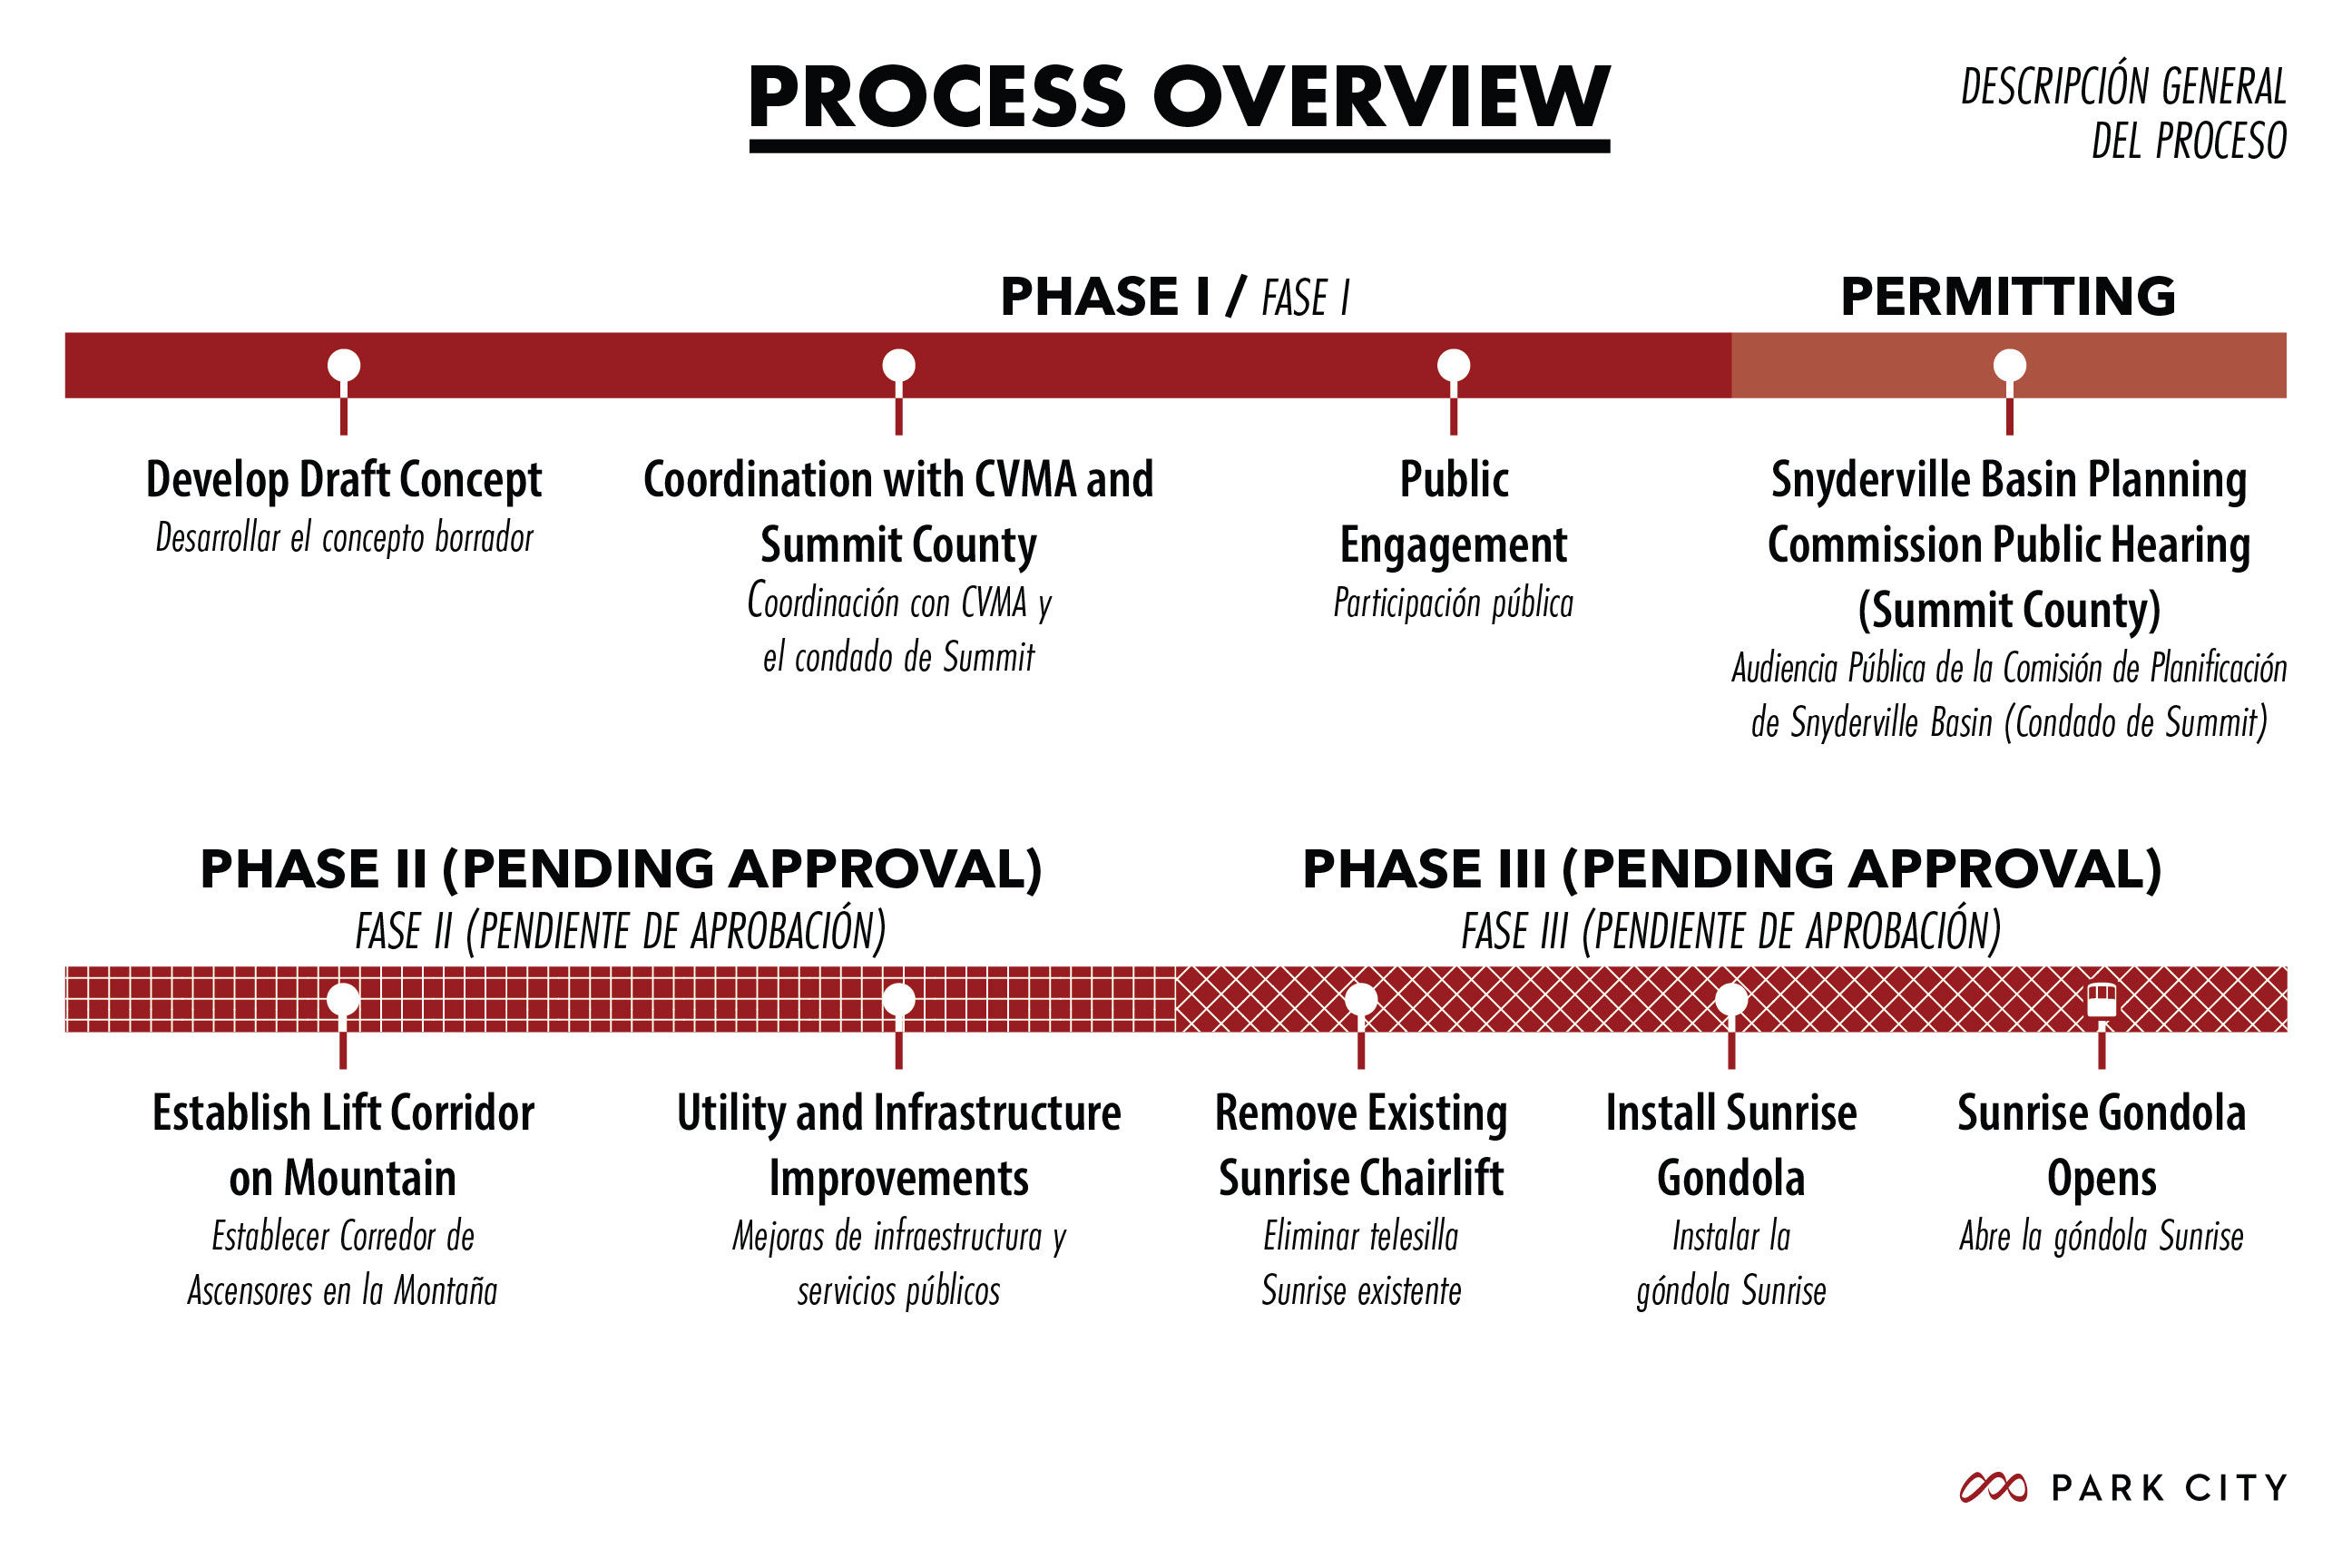 Park City Sunrise Gondola Process Overview